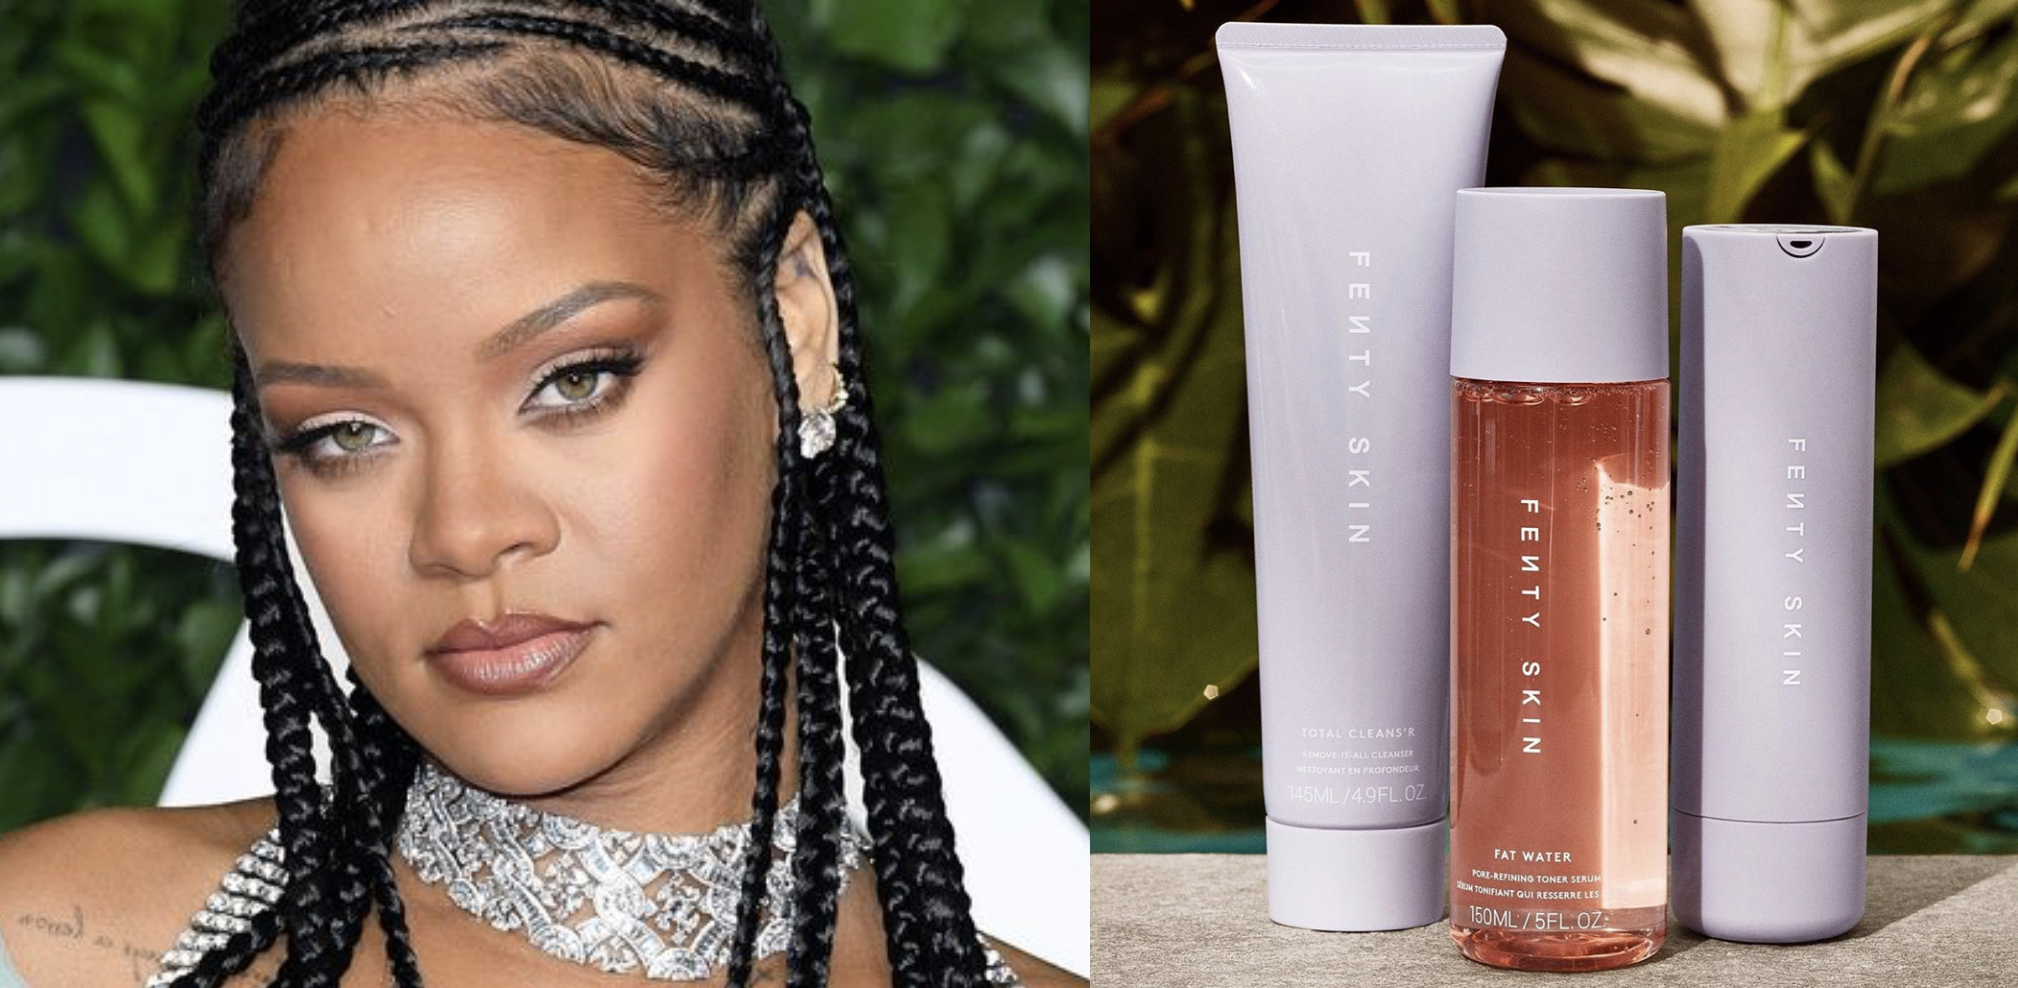 Rihanna's Fenty Skin launches new Fat Water Milky Toner